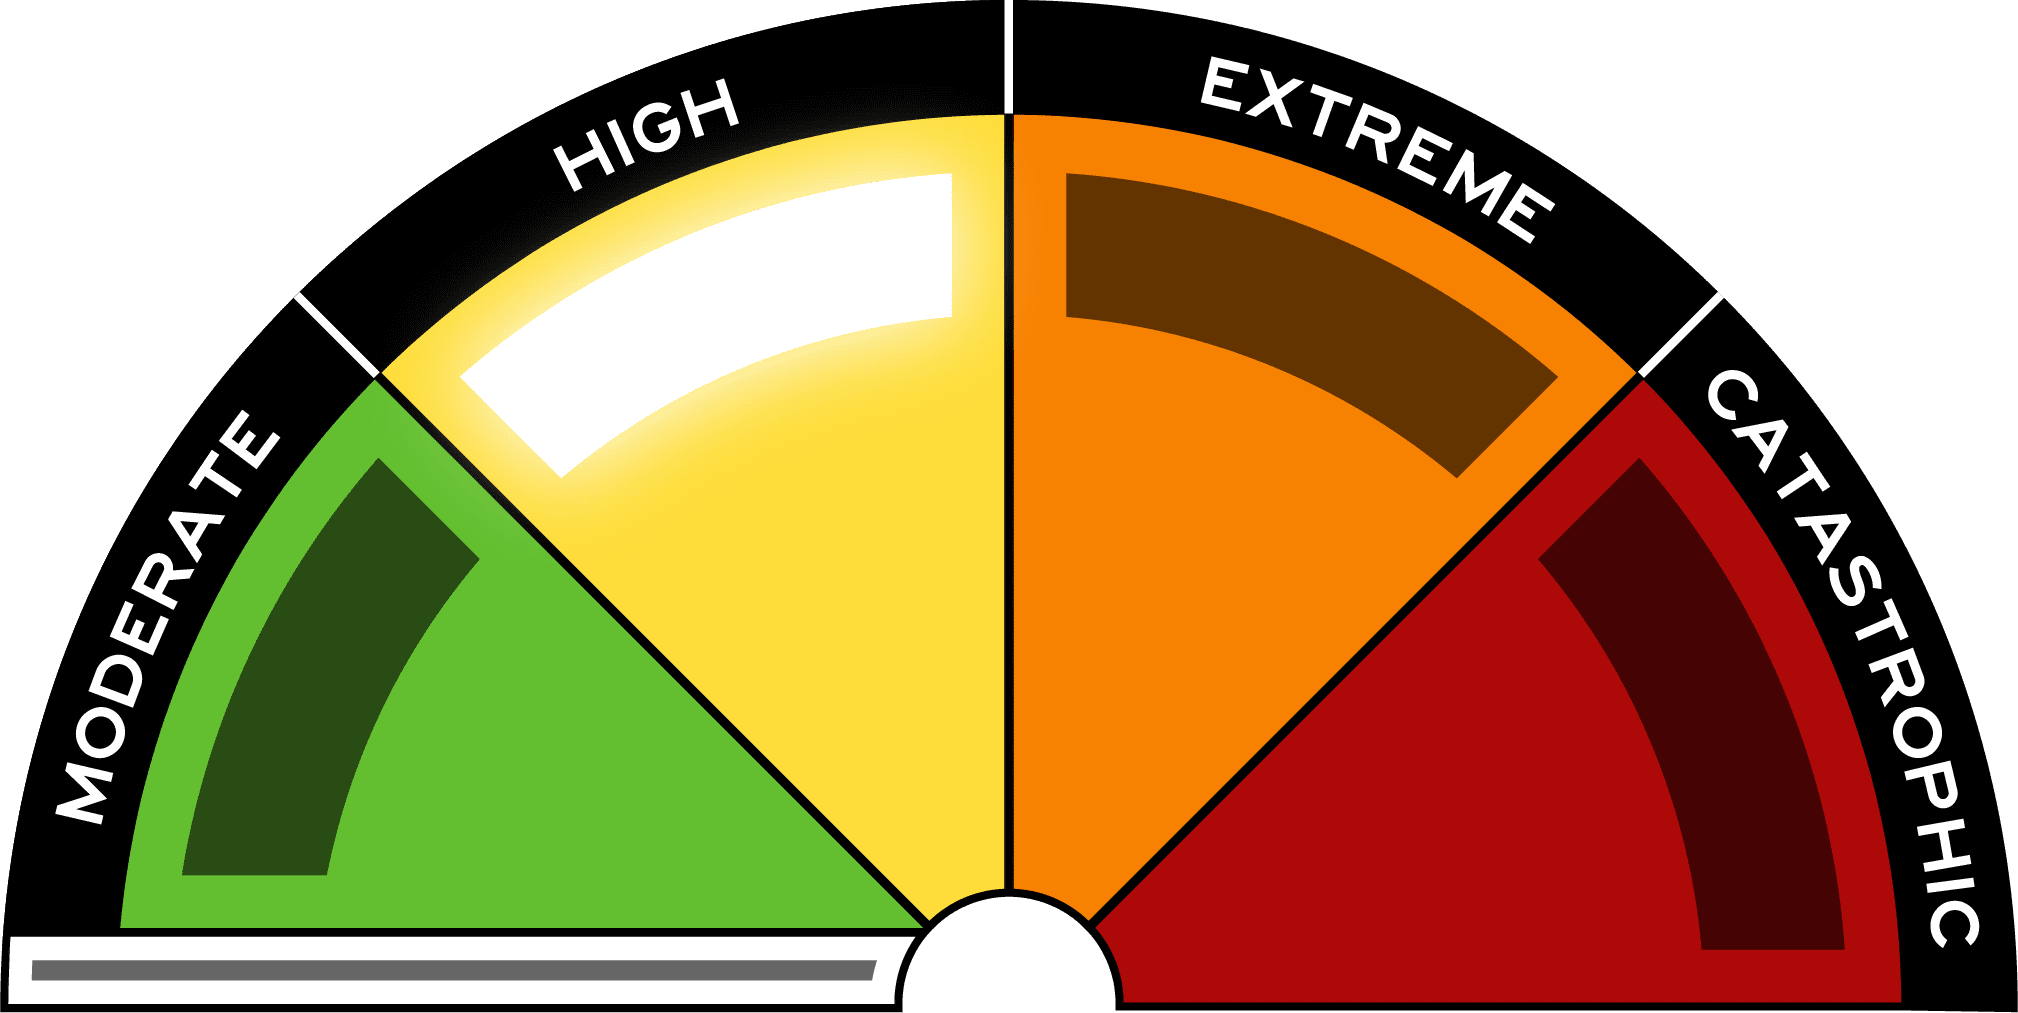 Australian Fire Danger Rating System sign